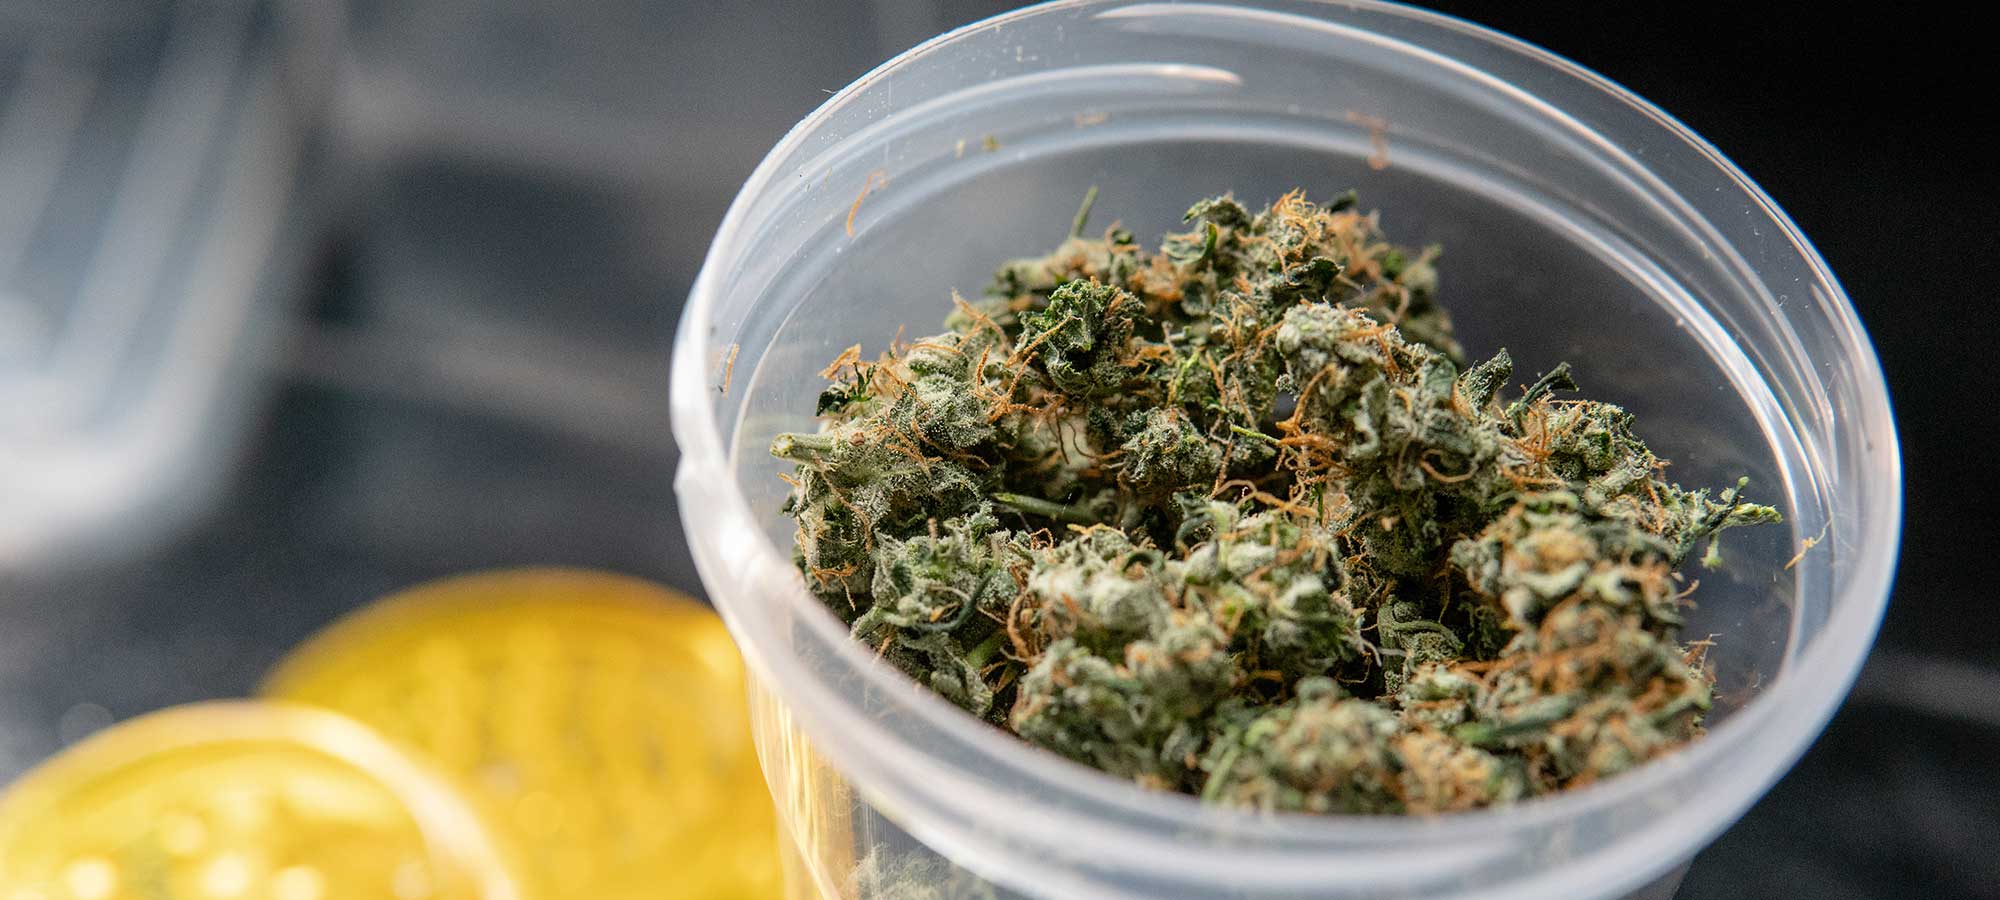 marijuana related news